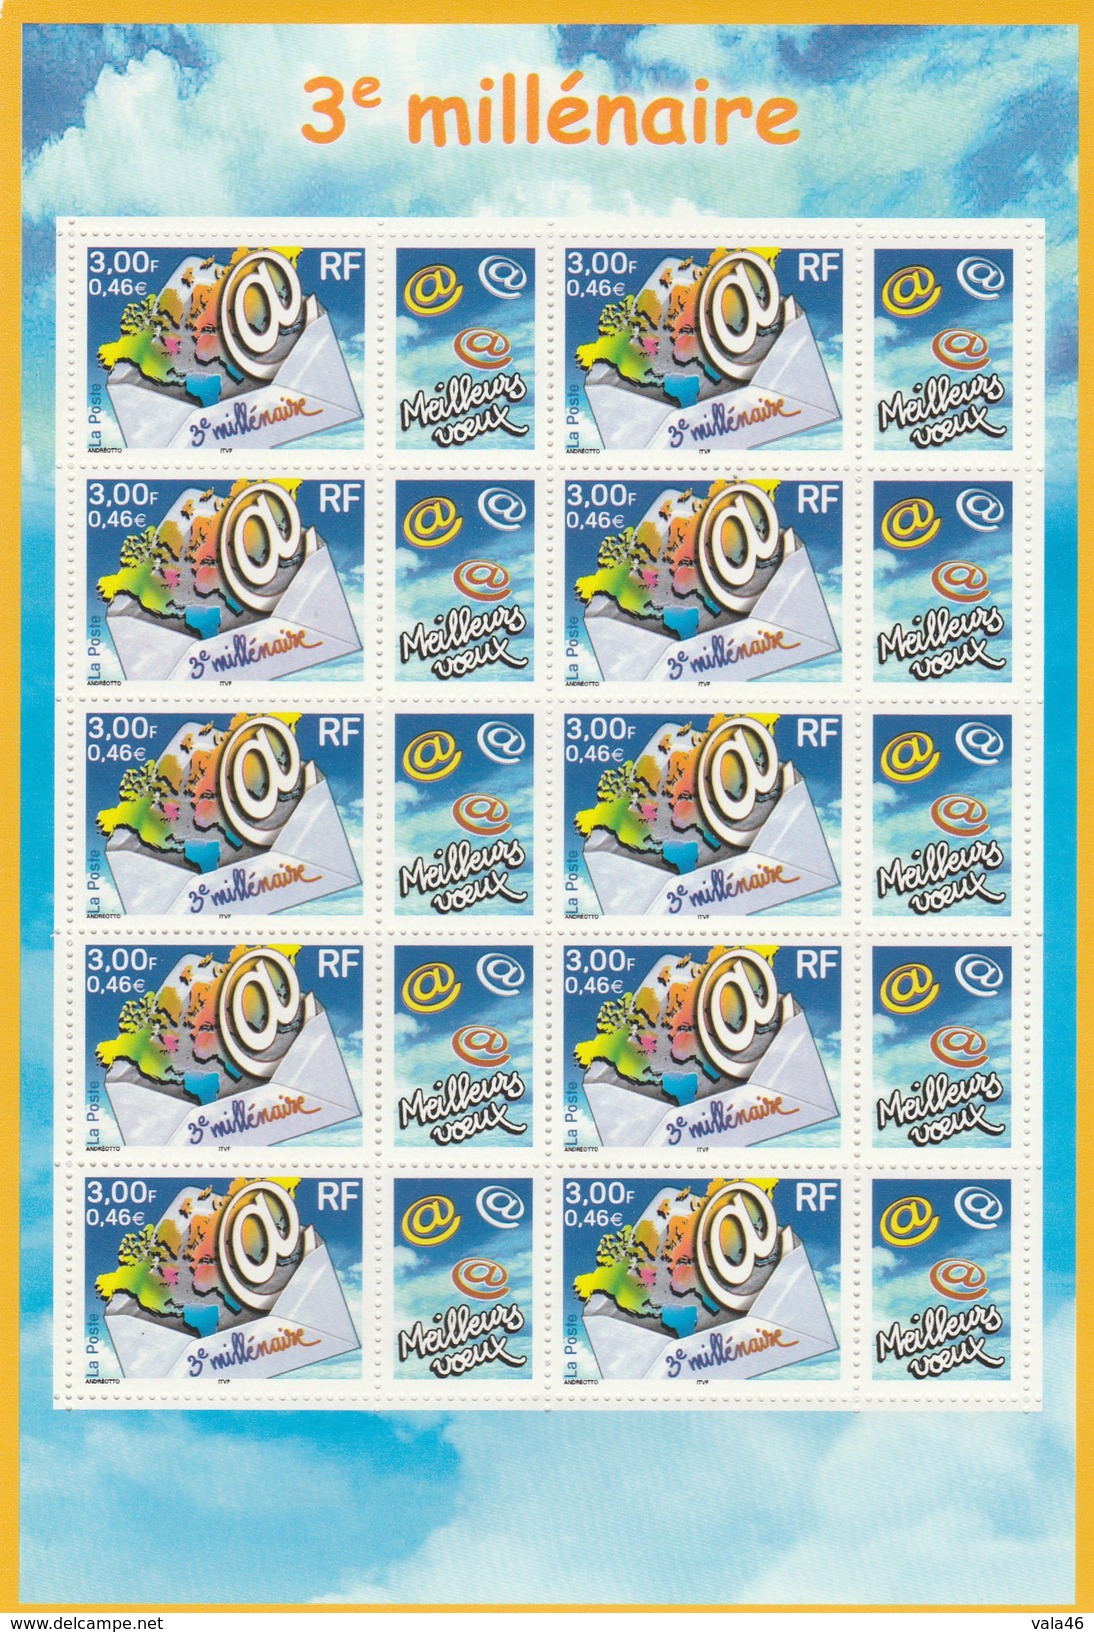 TIMBRES NEUFS    3è MILLENAIRE  MEILLEURS VOEUX   ANNEE 2000  - MINI FEUILLE - Unused Stamps